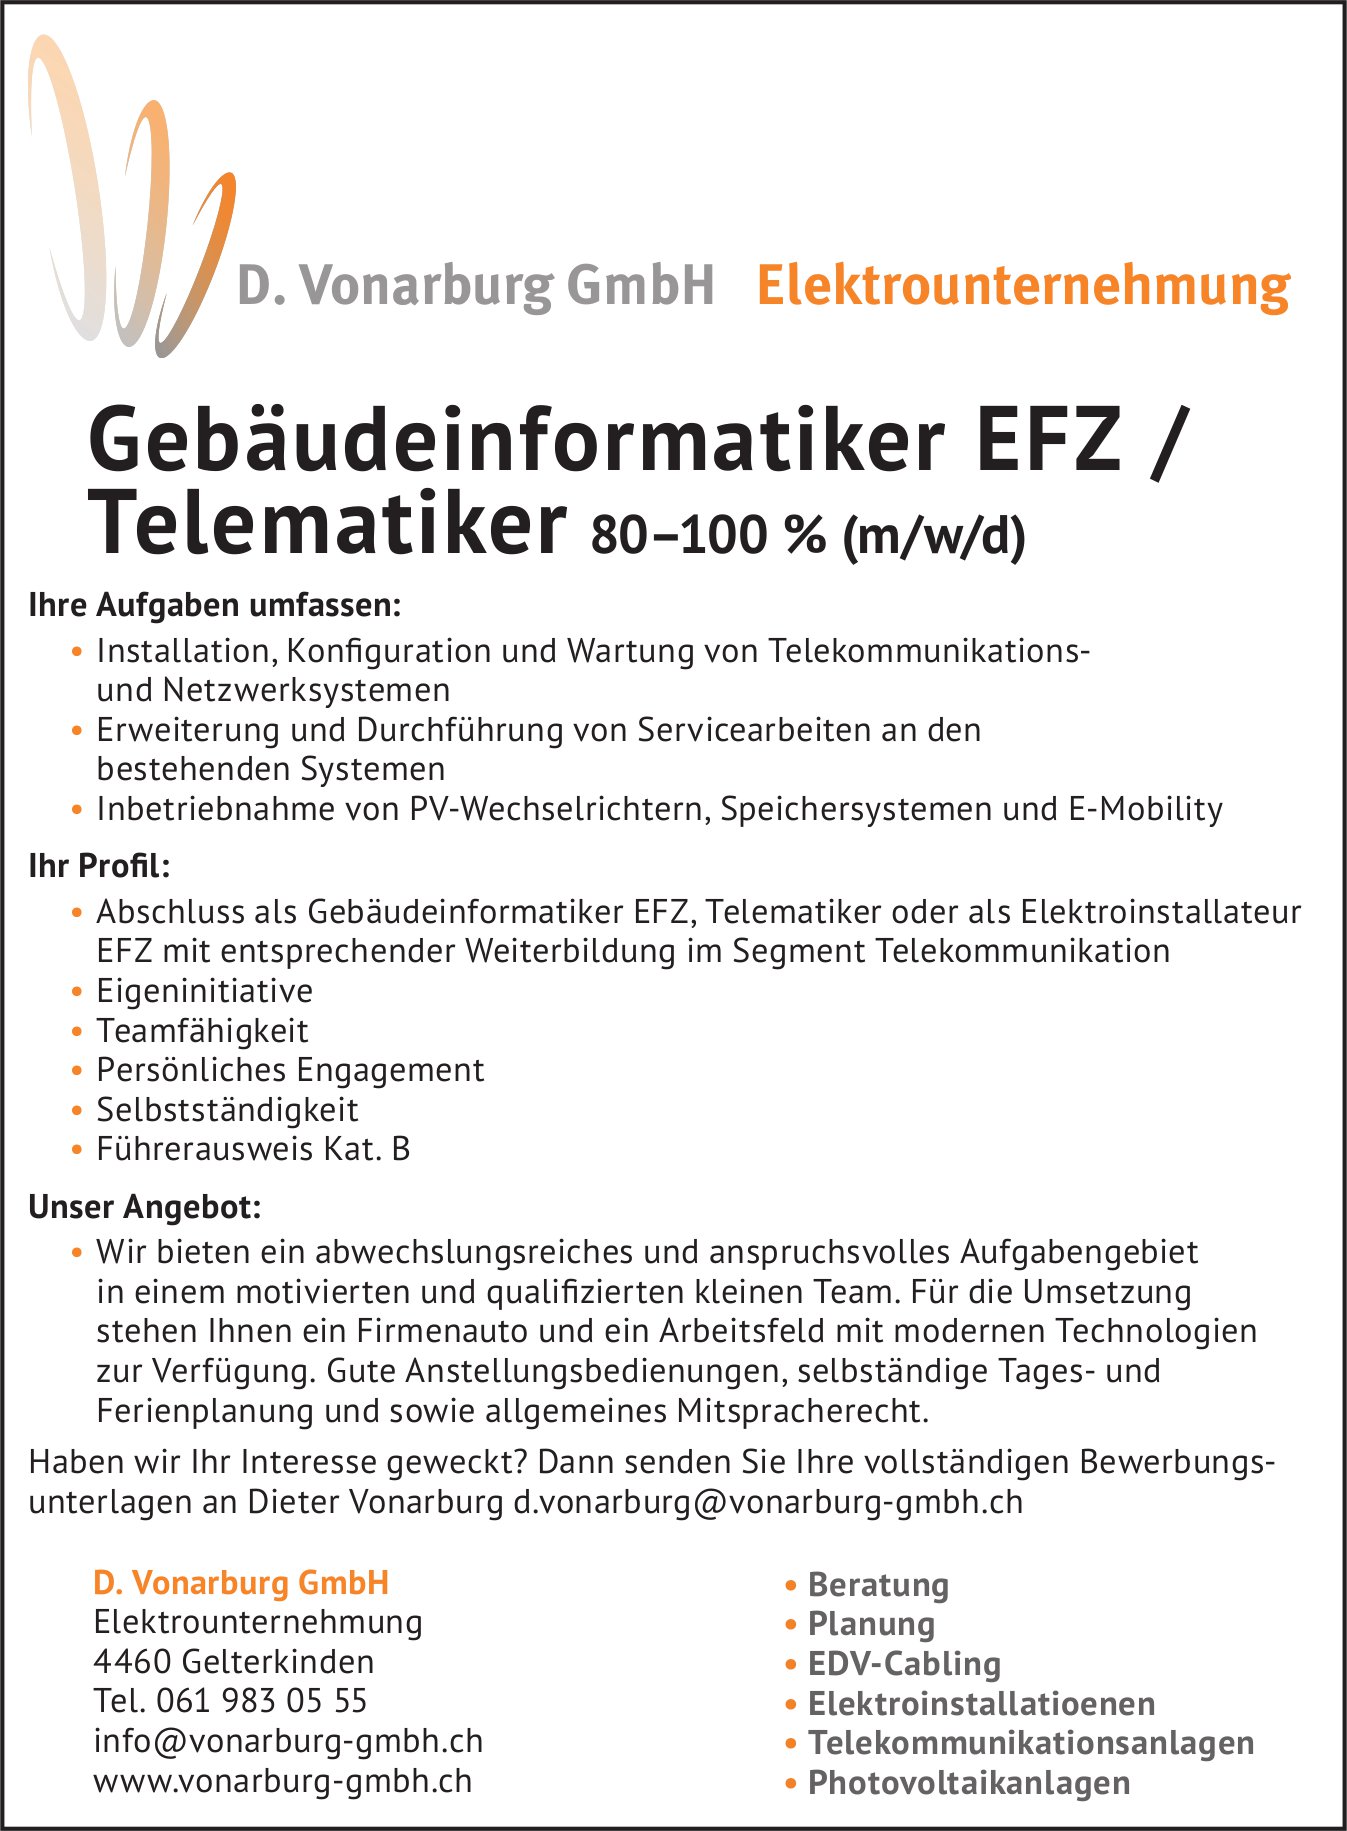 Gebäudeinformatiker EFZ / Telematiker 80–100% (m/w/d), D. Vonarburg GmbH, Gelterkinden, gesucht